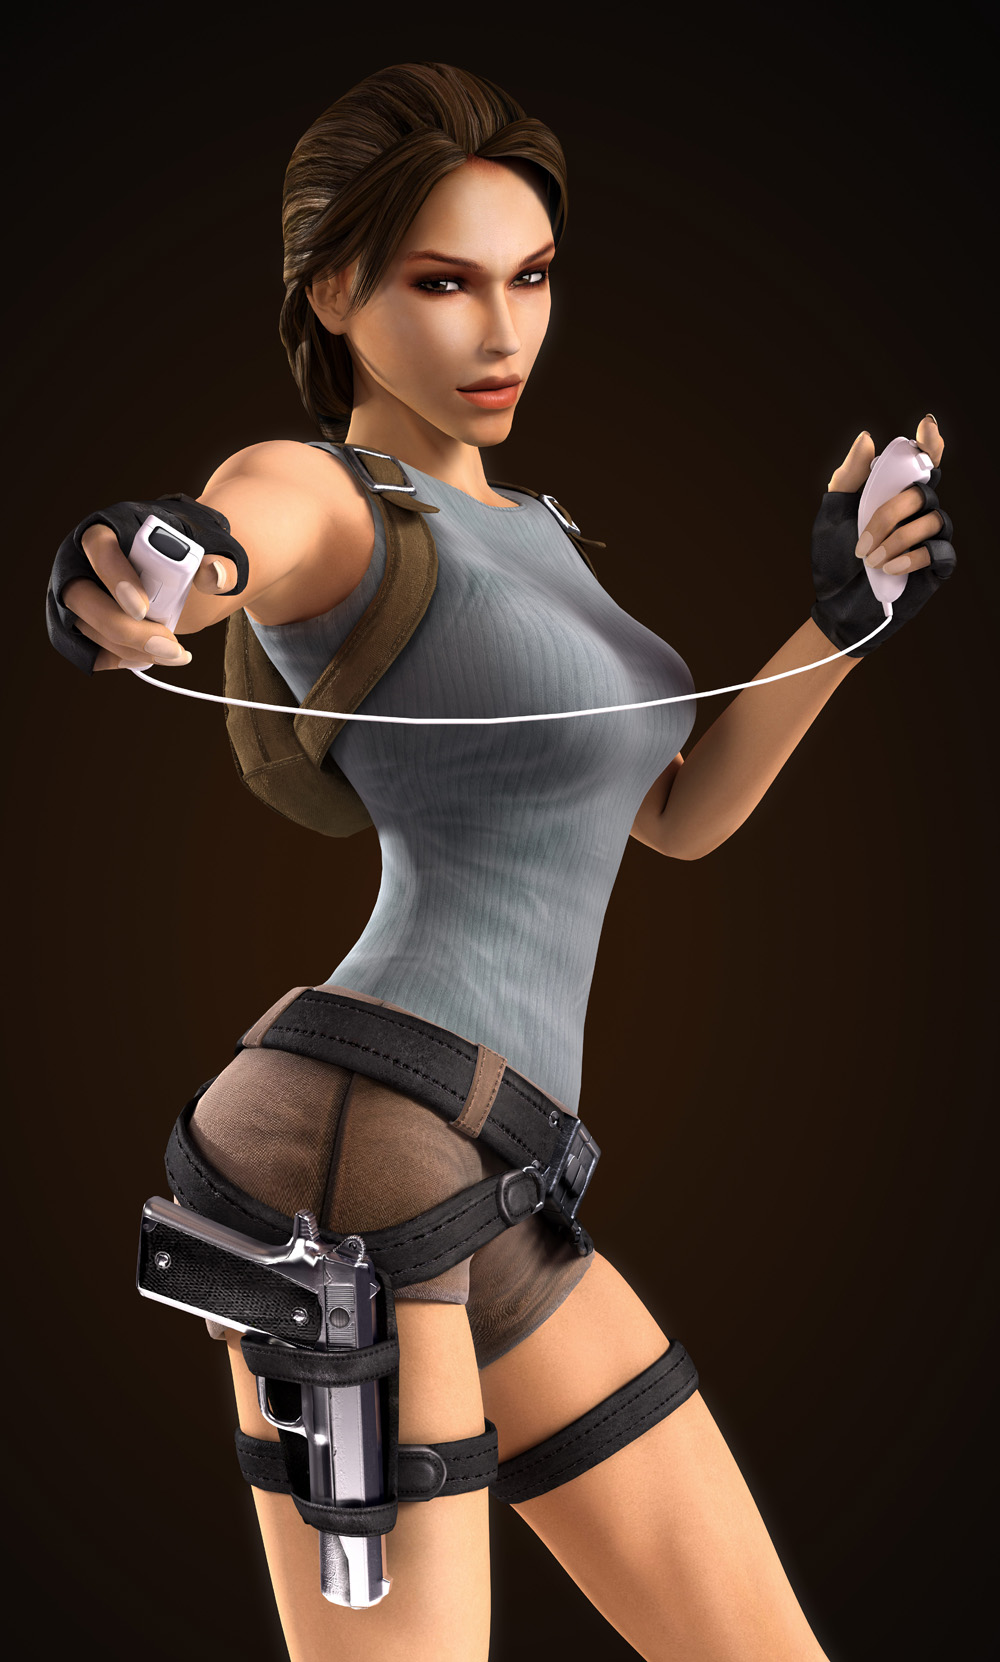 Lara Croft 04